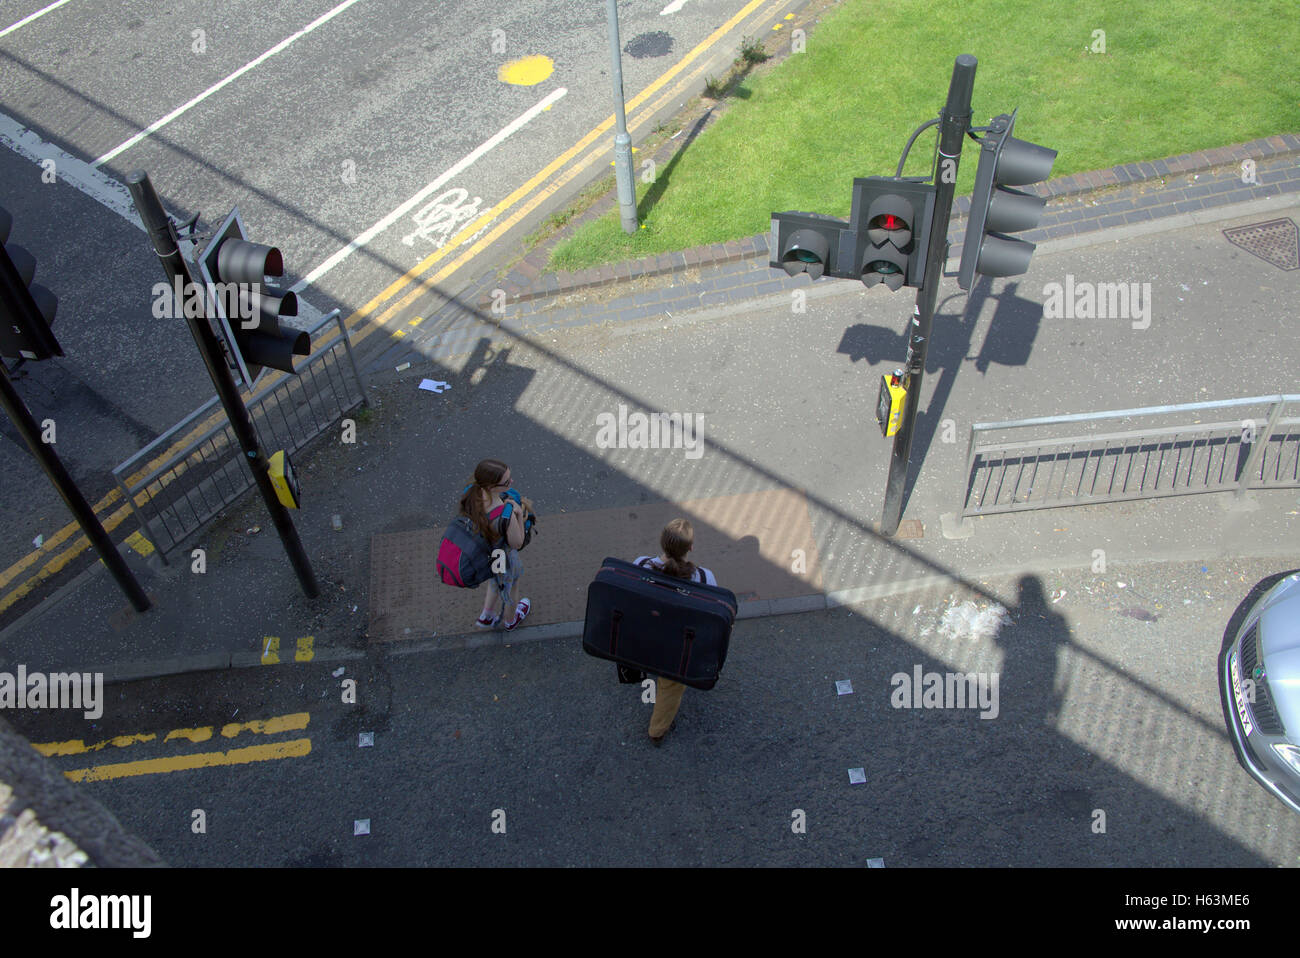 Menschen-Koffer auf Bürgersteig in der Nähe von Ampeln, Glasgow, Schottland Stockfoto